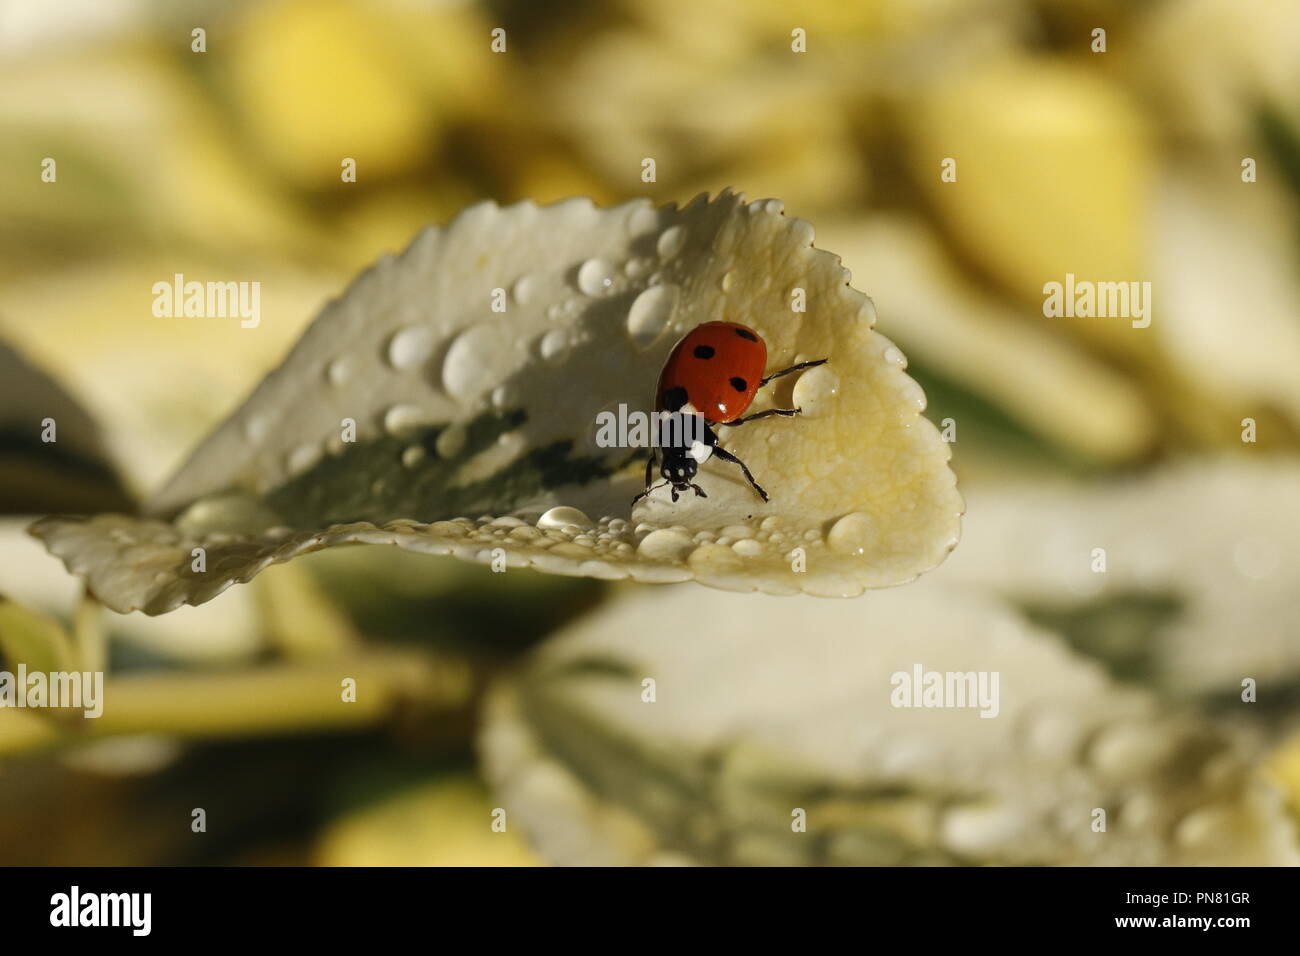 ladybug one the leaf Stock Photo